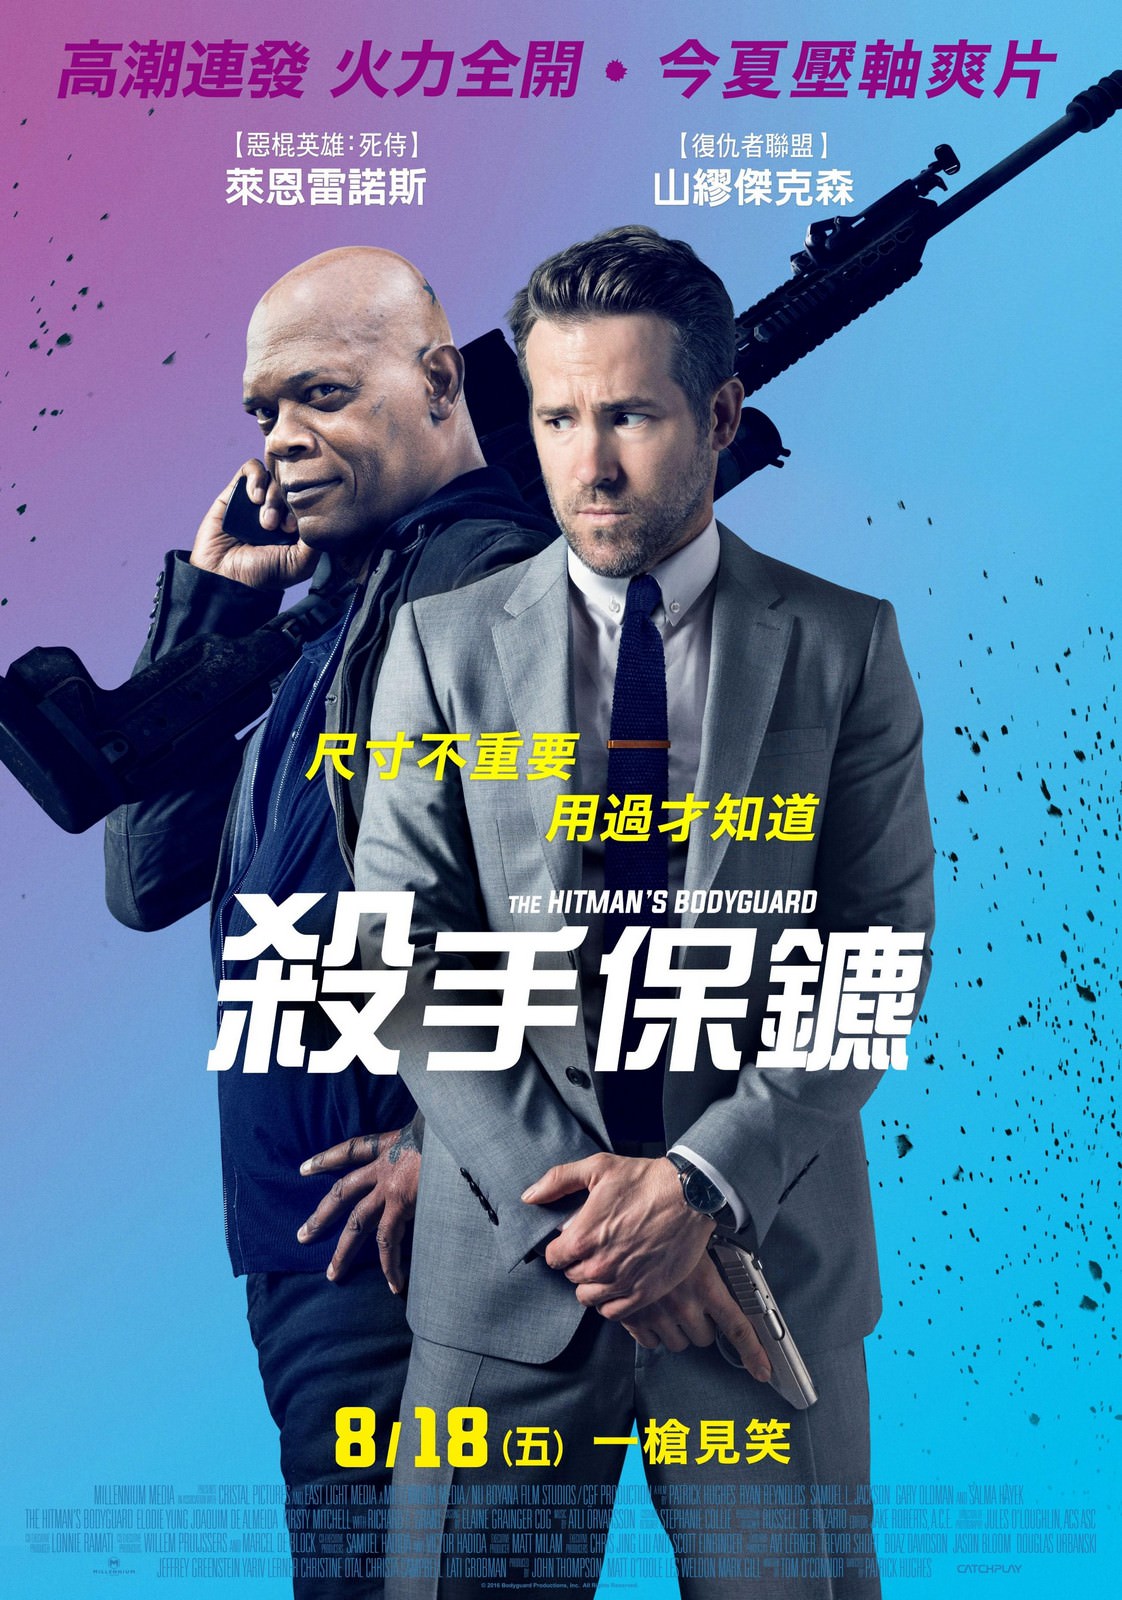 Movie, The Hitman's Bodyguard(美國) / 殺手保鑣(台) / 王牌保镖(中) / 鑣救殺手(港), 電影海報, 台灣